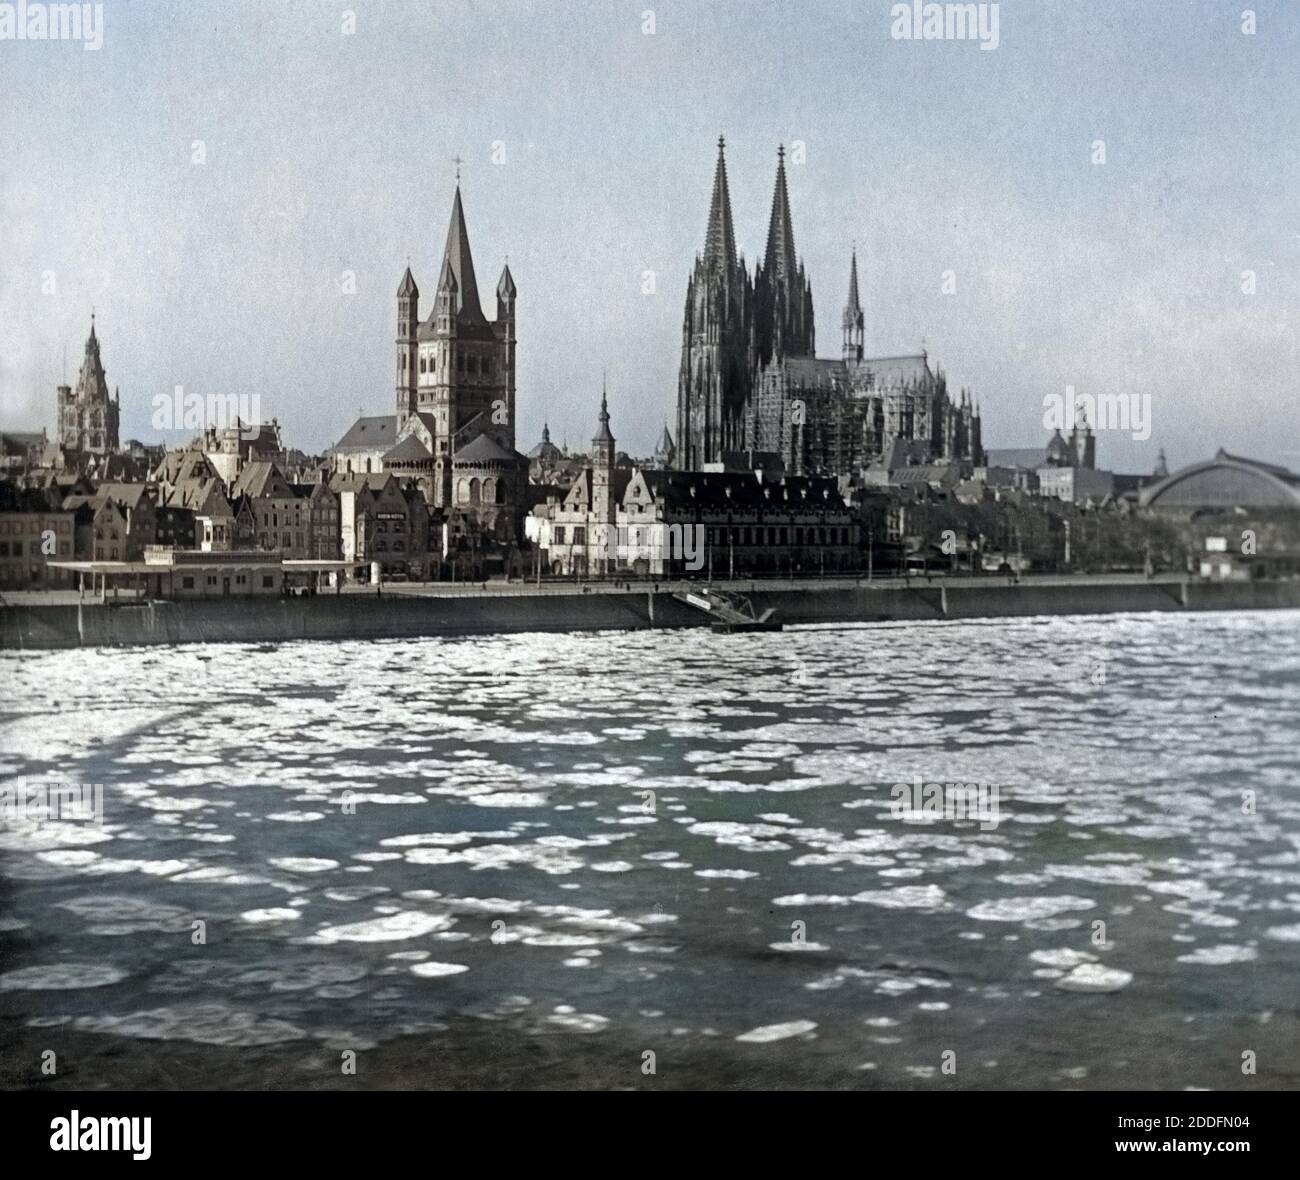 Eisschollen treiben über den Rhein an der Altstadt von Köln vorbei, Deutschland 1920er Jahre. Ice floes passing the city of Cologne on river Rhine, Germany 1920s. Stock Photo